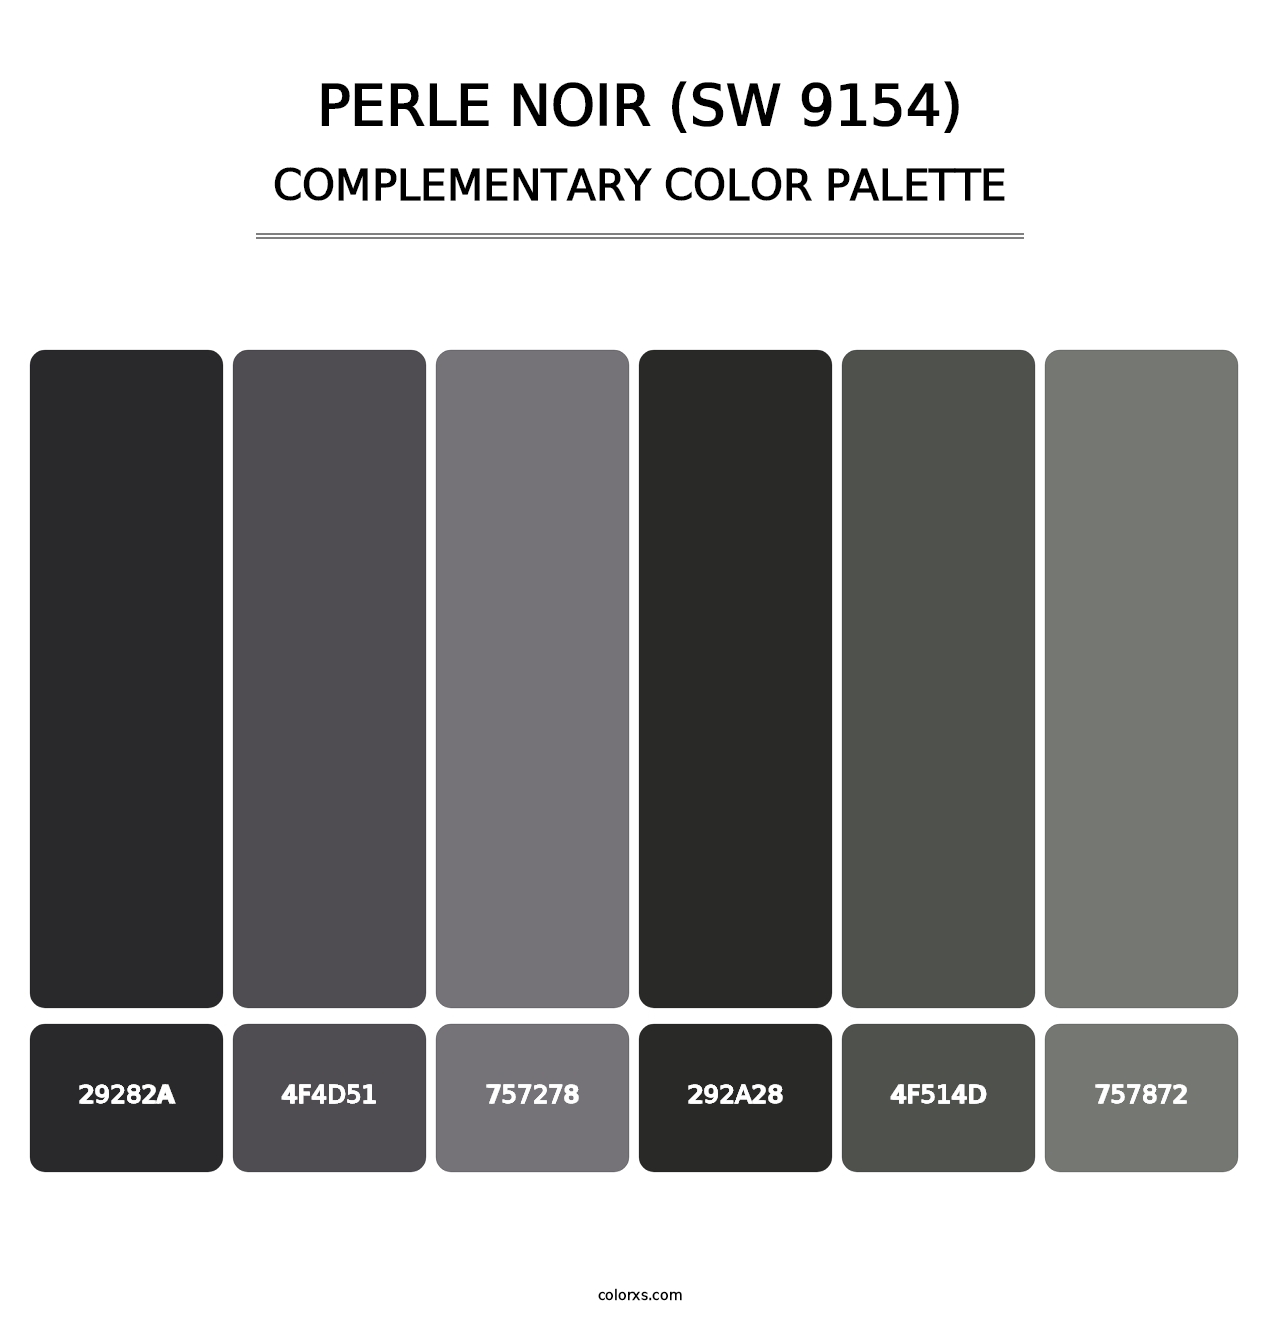 Perle Noir (SW 9154) - Complementary Color Palette